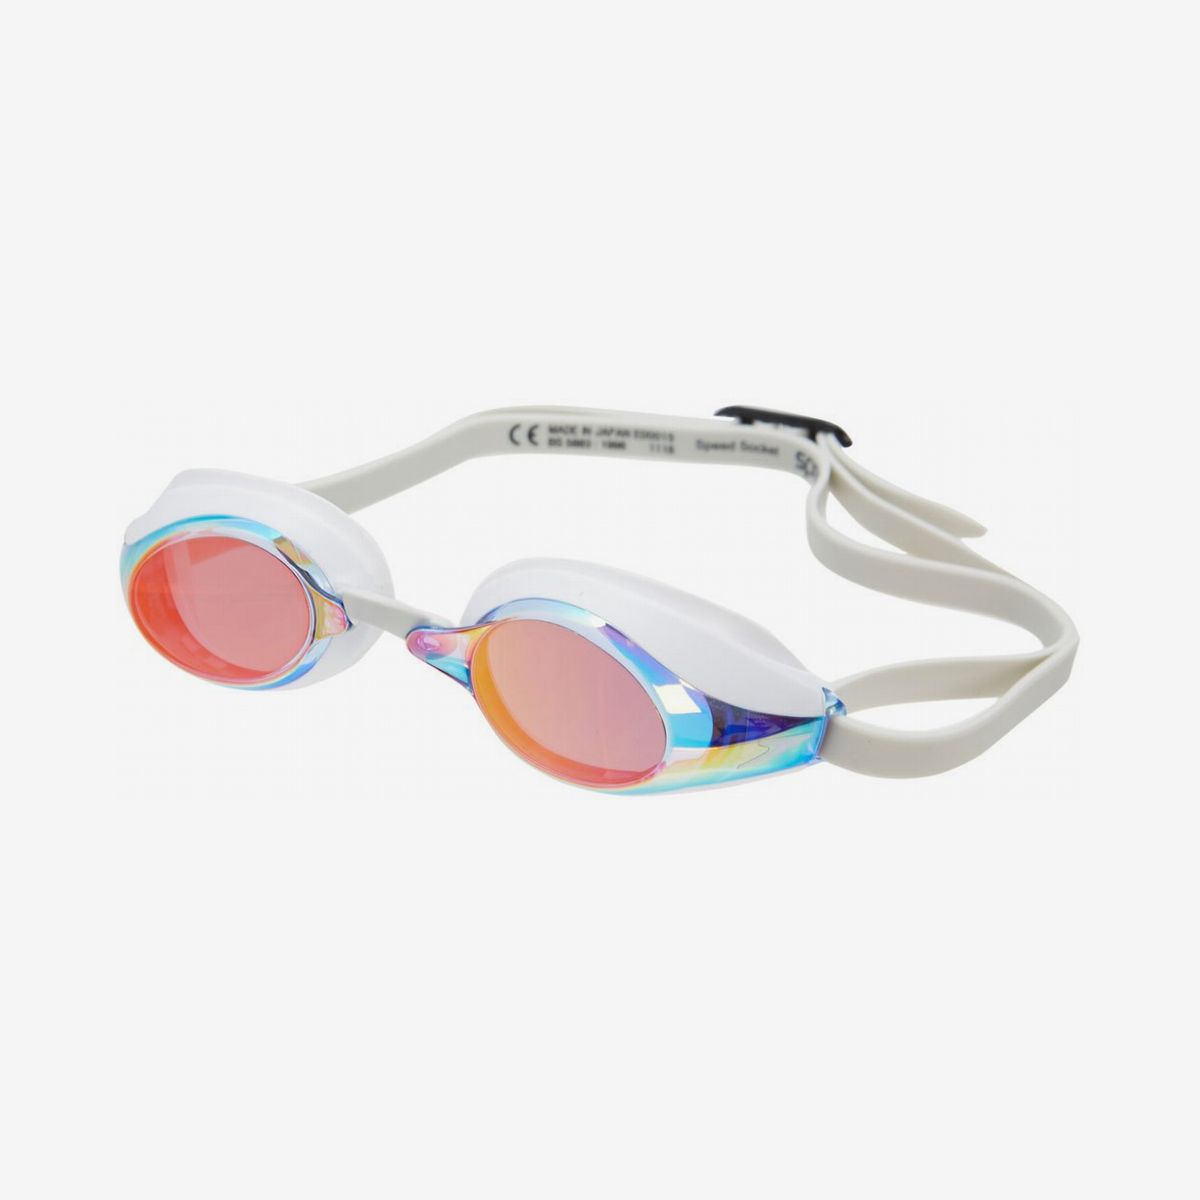 Speedo Jet Mirror Senior Adult Goggles Swimming Black Orange Trim CL 